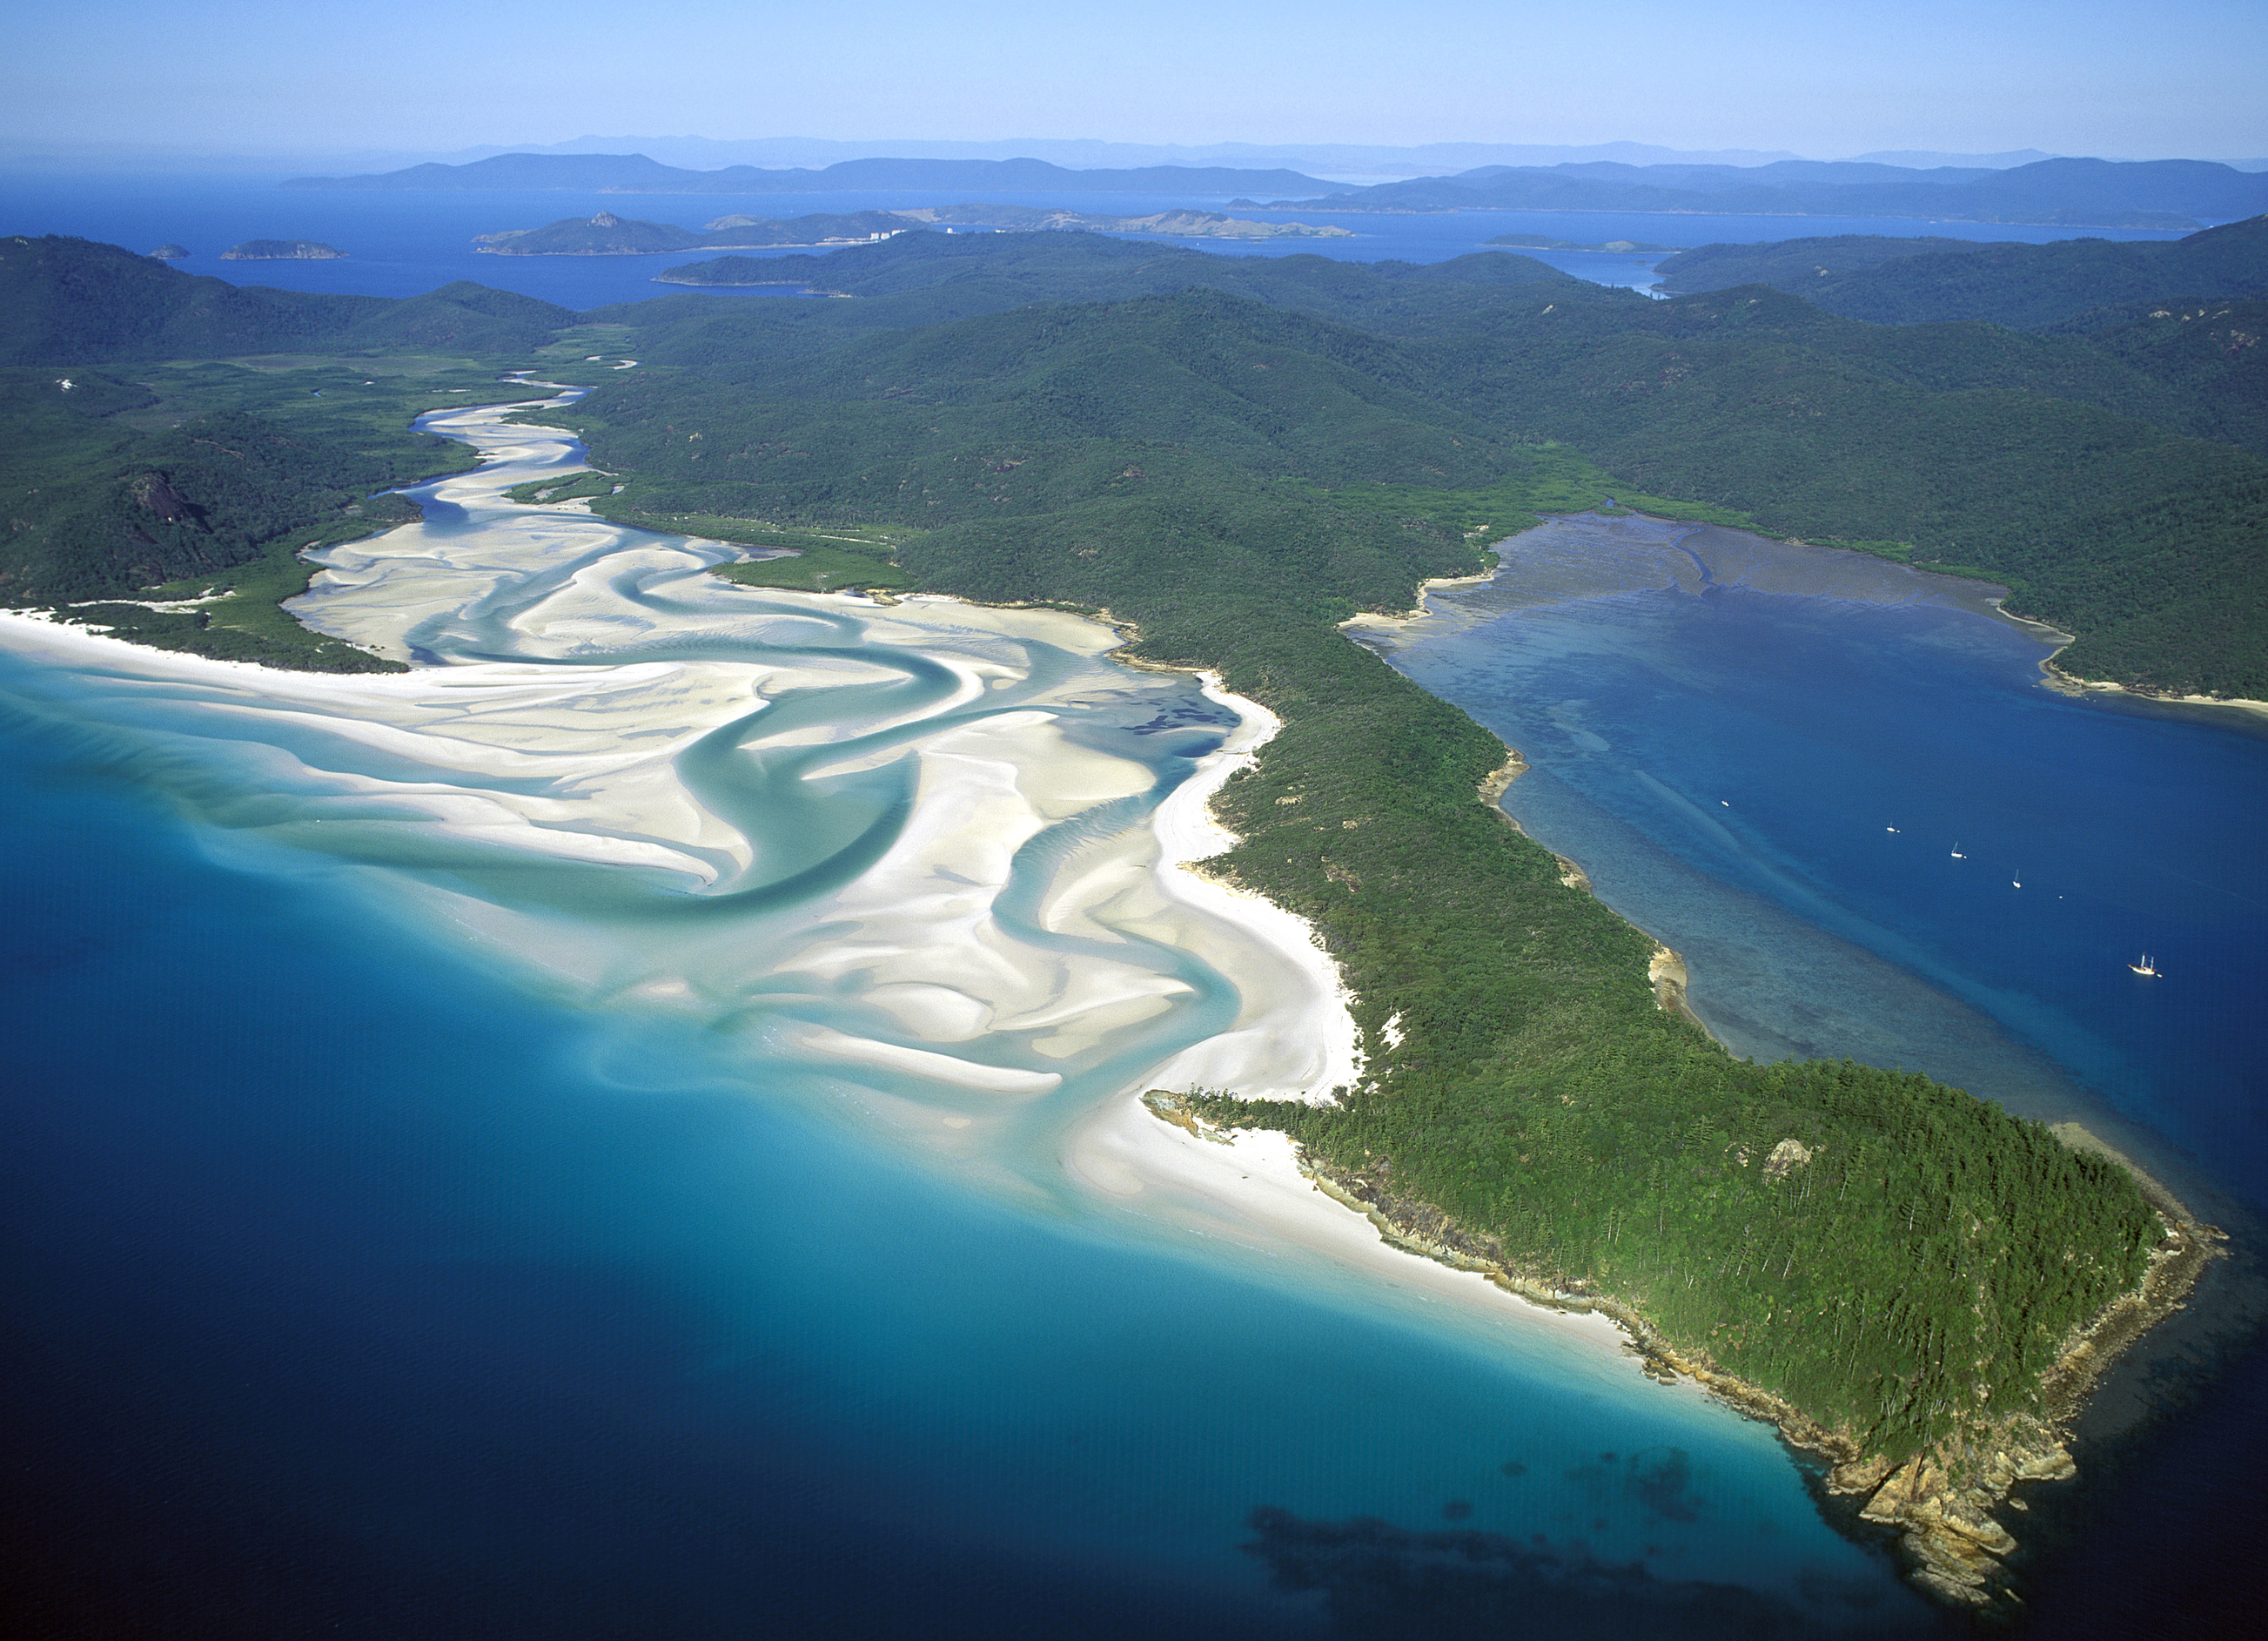 Whitsunday Islands Australiens Schönste Inselgruppe